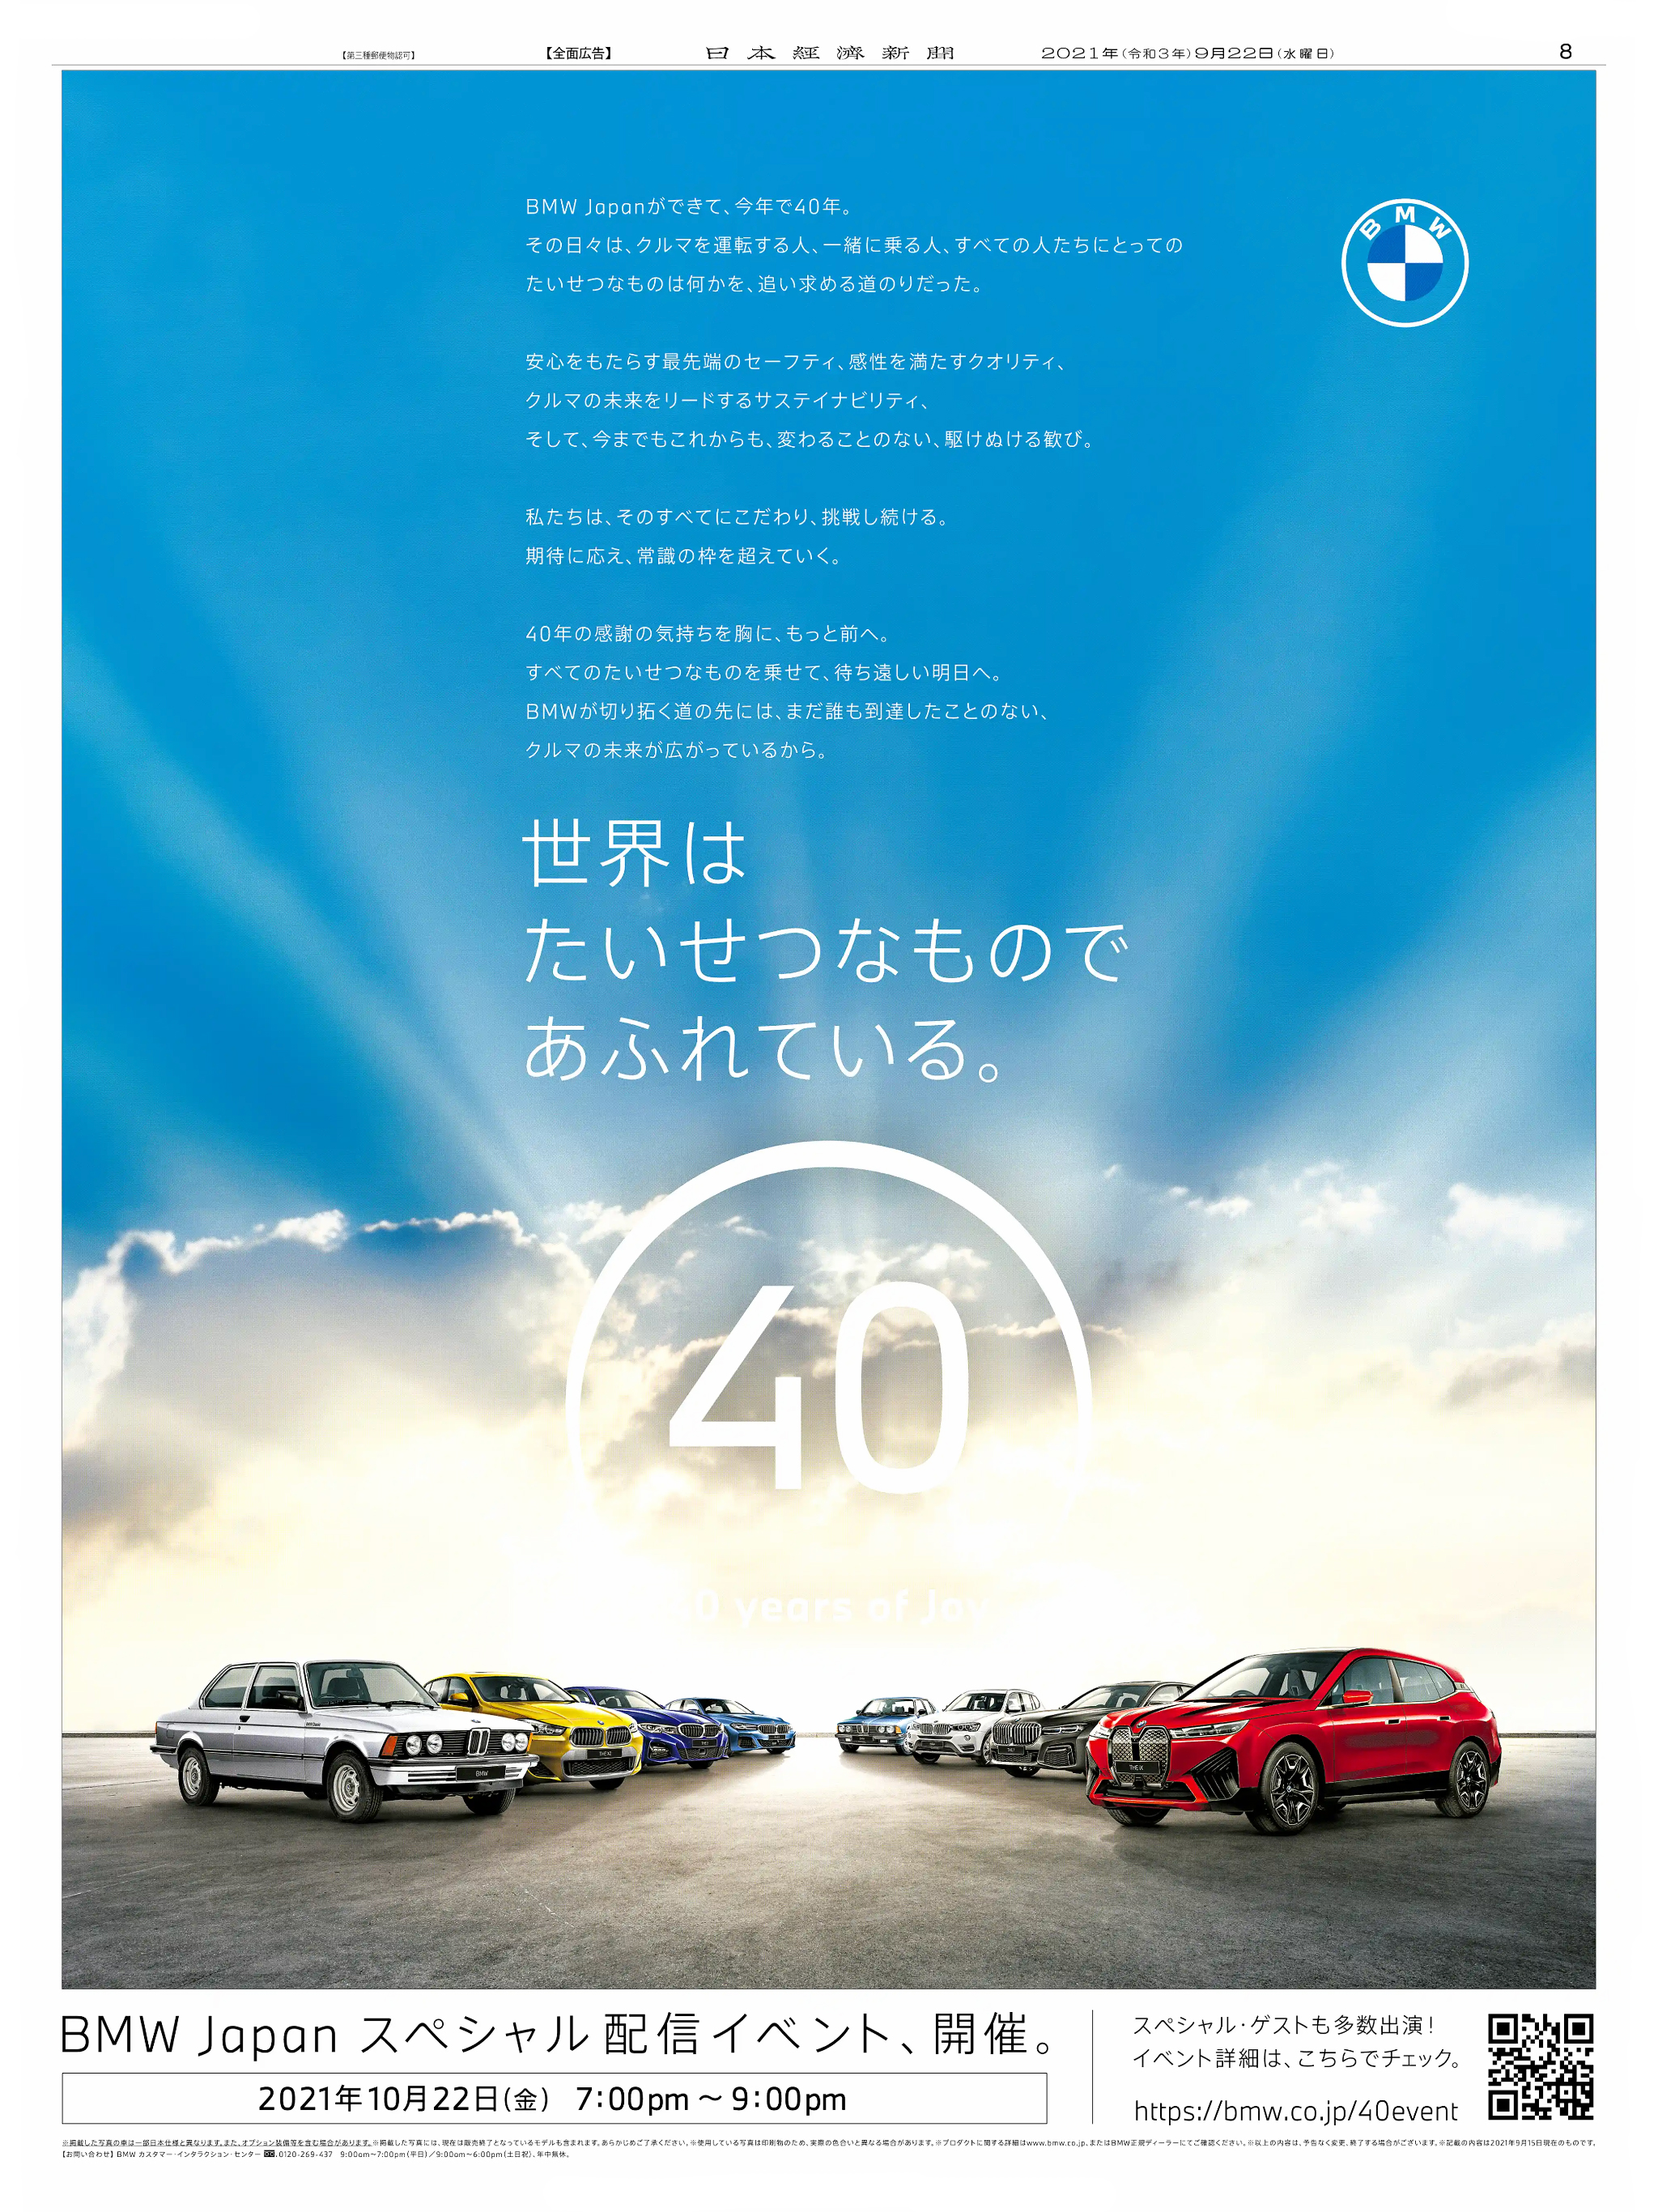 周年記念広告事例 「BMW Japan 設立40周年」